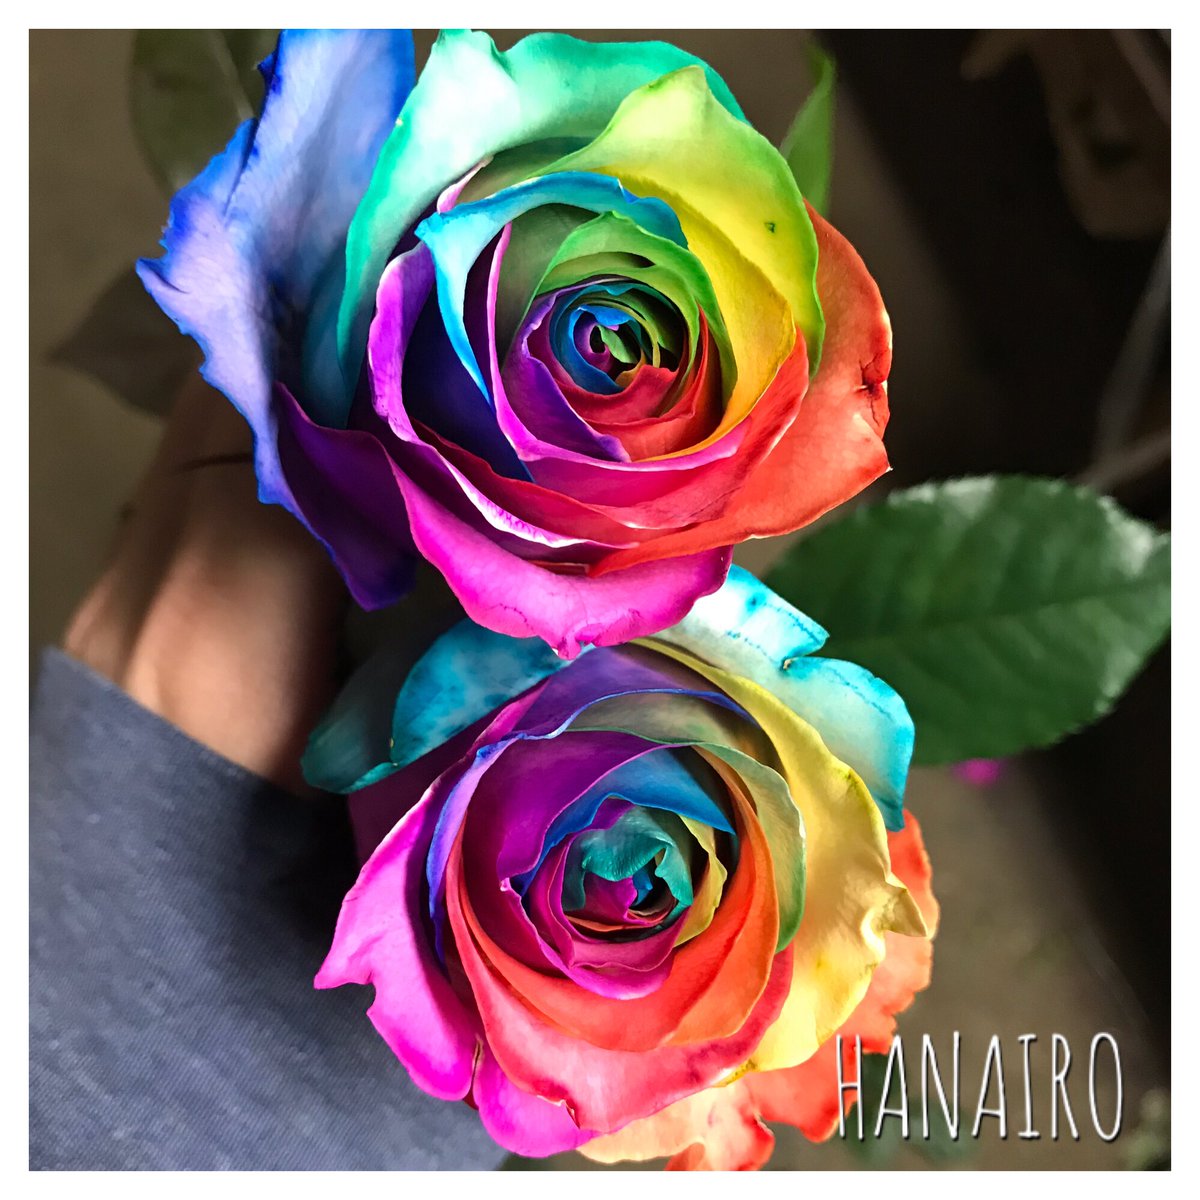 染めバラ専門店 Hanairo בטוויטר レインボーローズ 作り方変えてみました いい感じになる様にバージョンアップされました